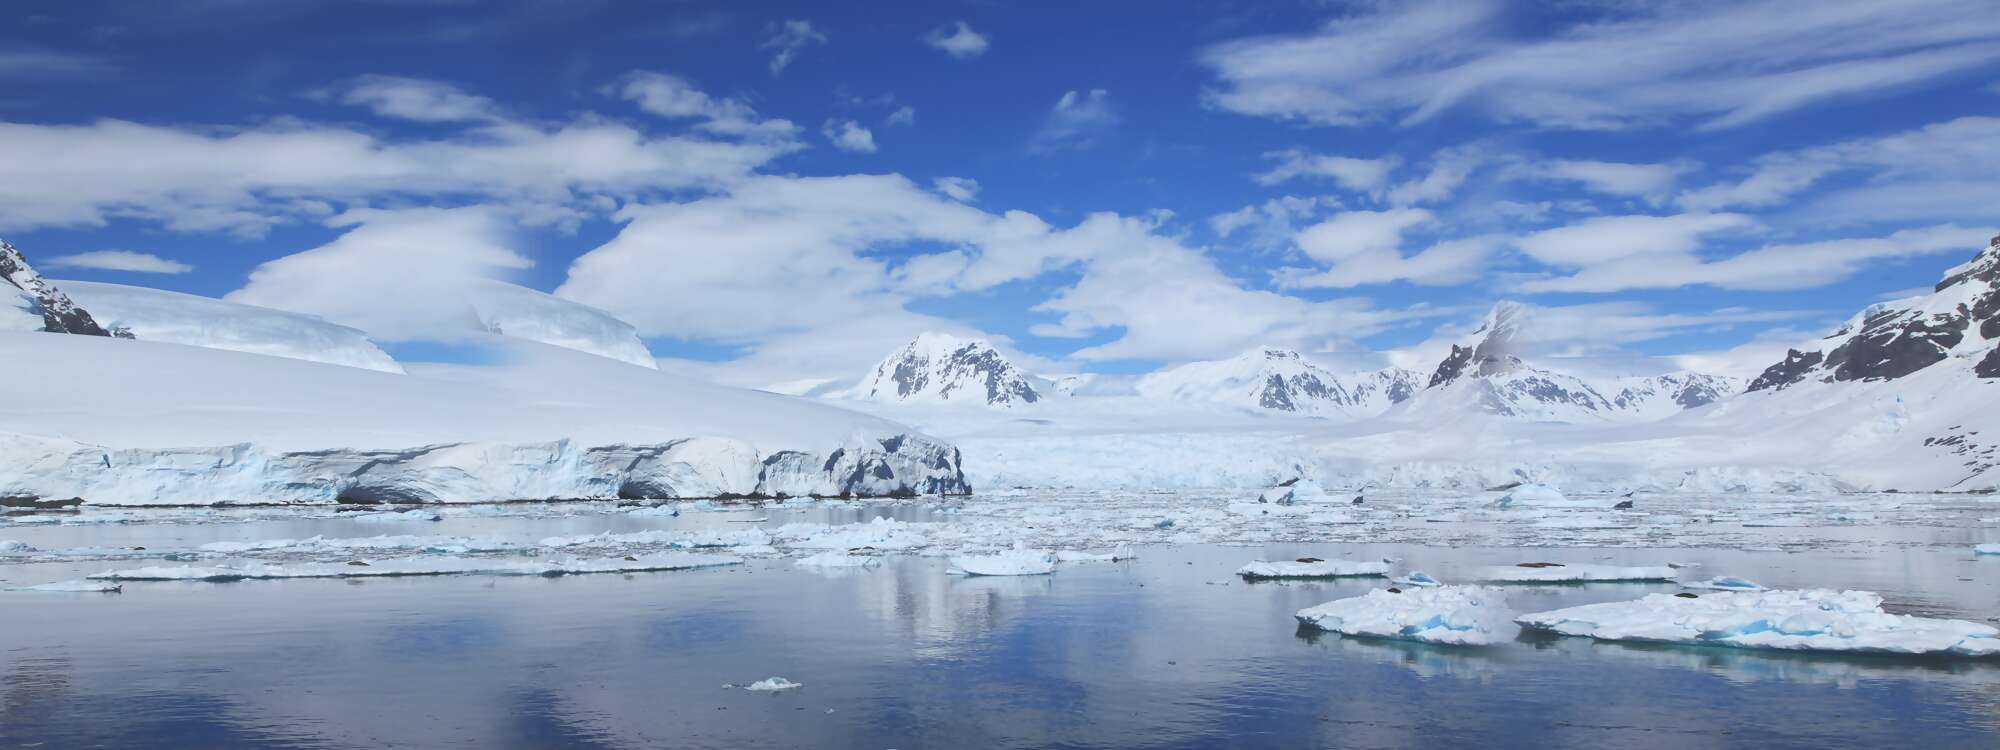 Diese klassische Route für unsere Expeditionen in die Antarktis ist das Tor zur südlichen Antarktischen Halbinsel in der Antarktis